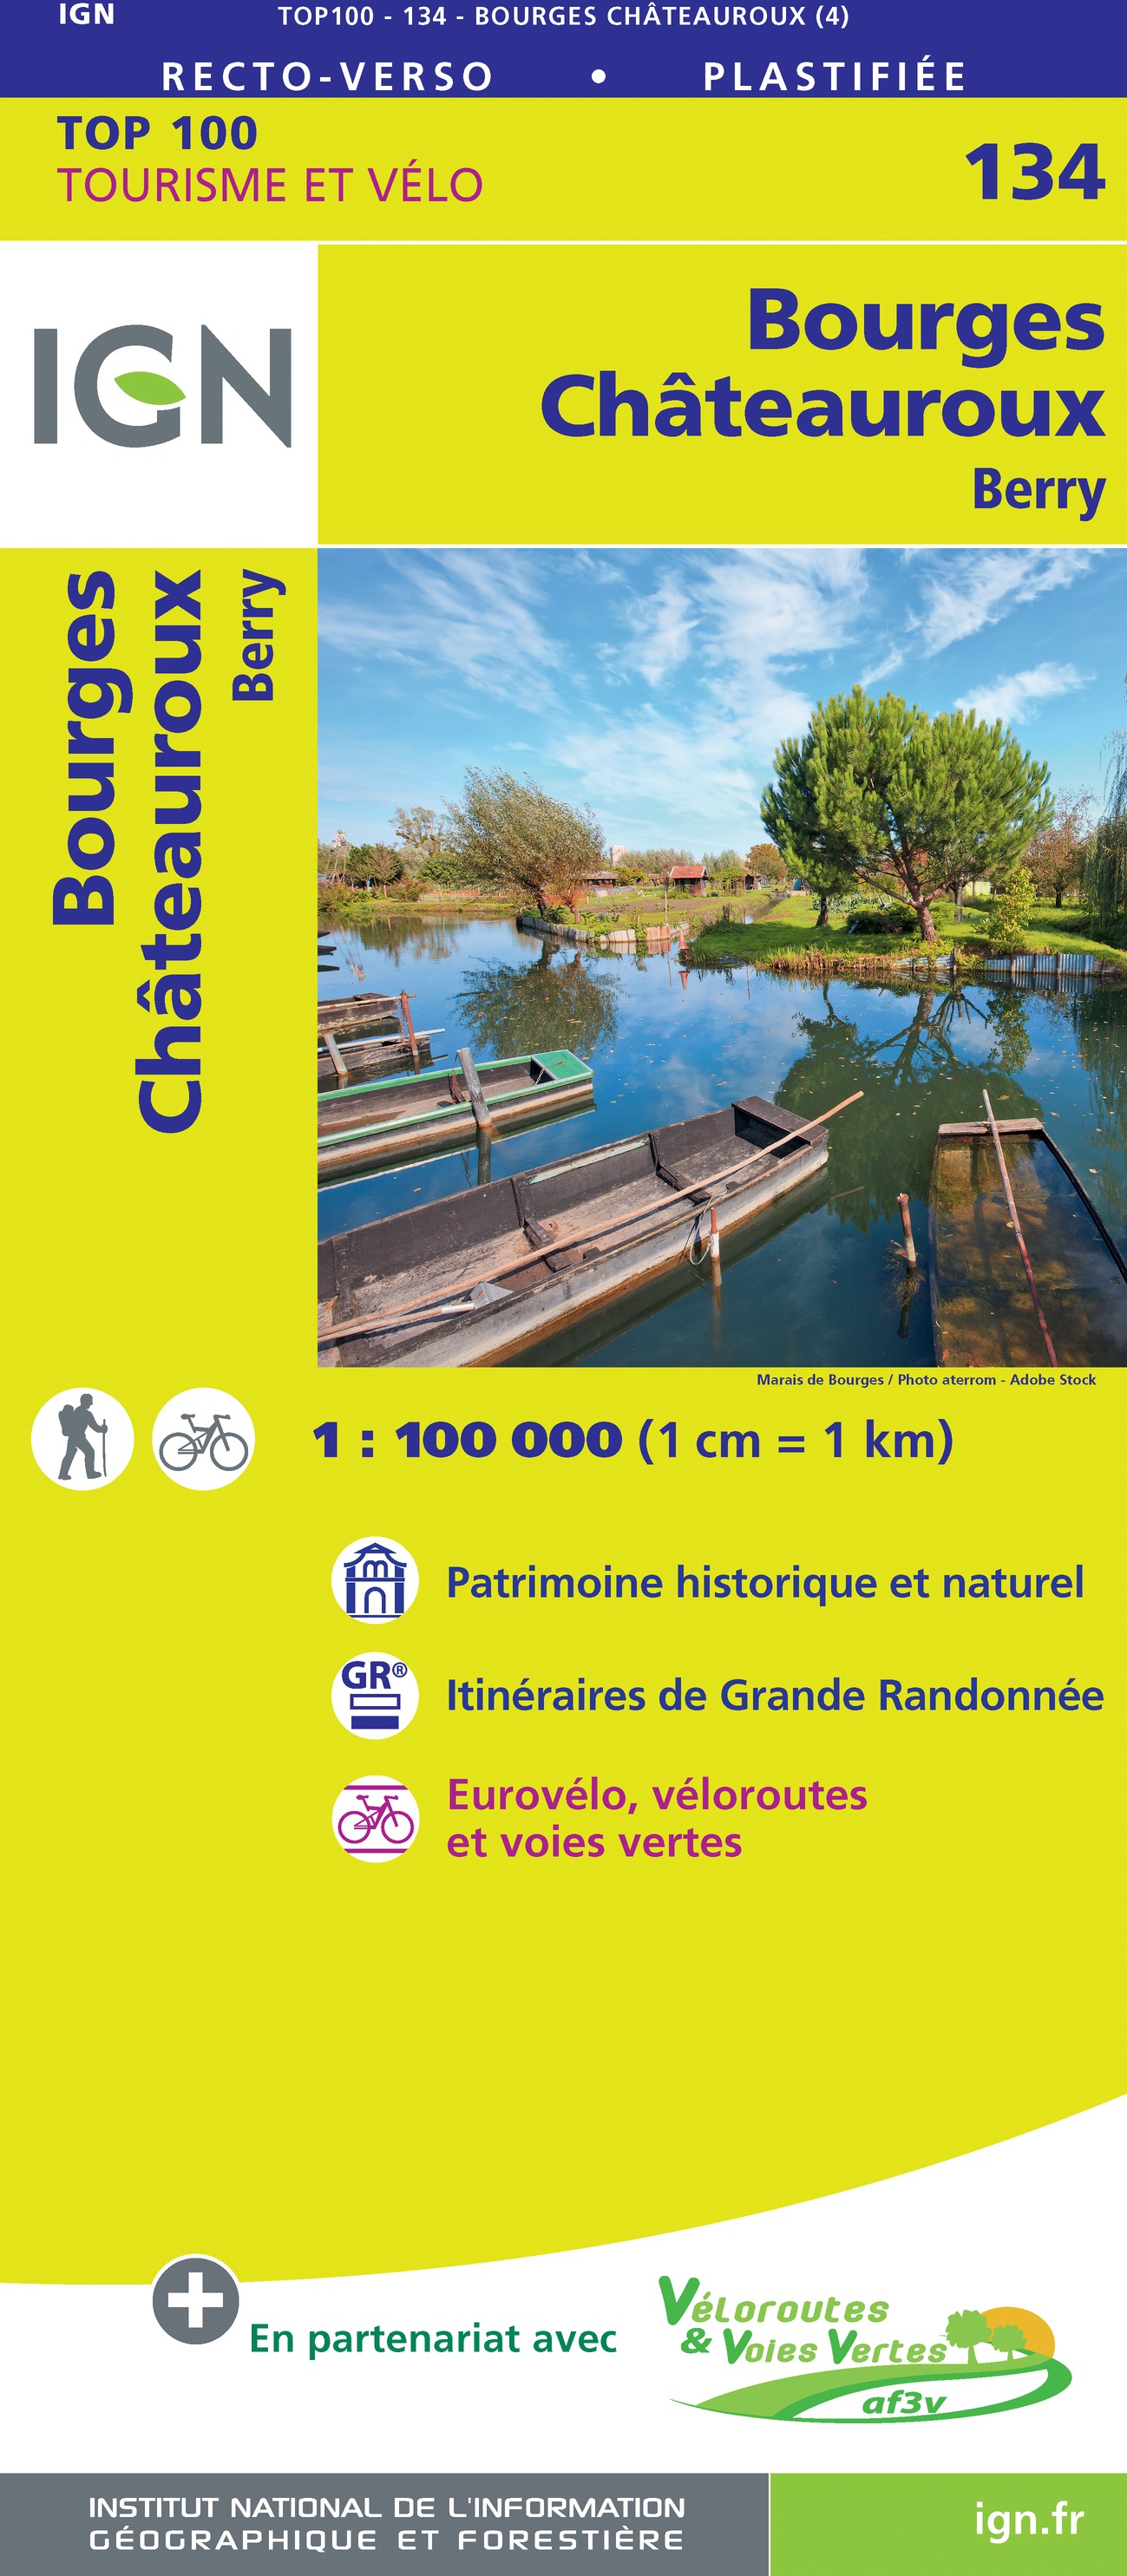 Online bestellen: Fietskaart - Wegenkaart - landkaart 134 Bourges - Chateauroux | IGN - Institut Géographique National